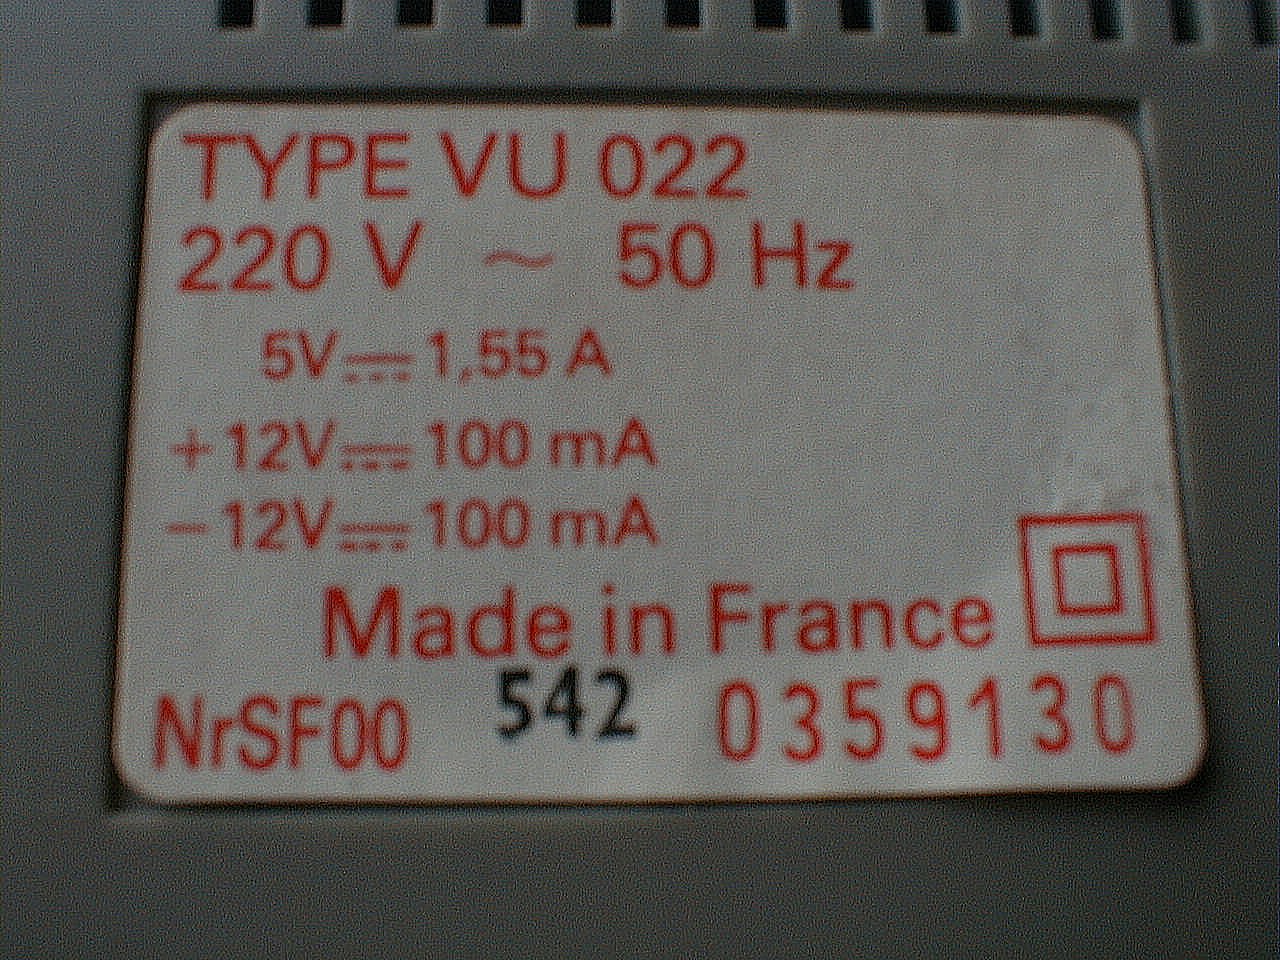 VG-5000